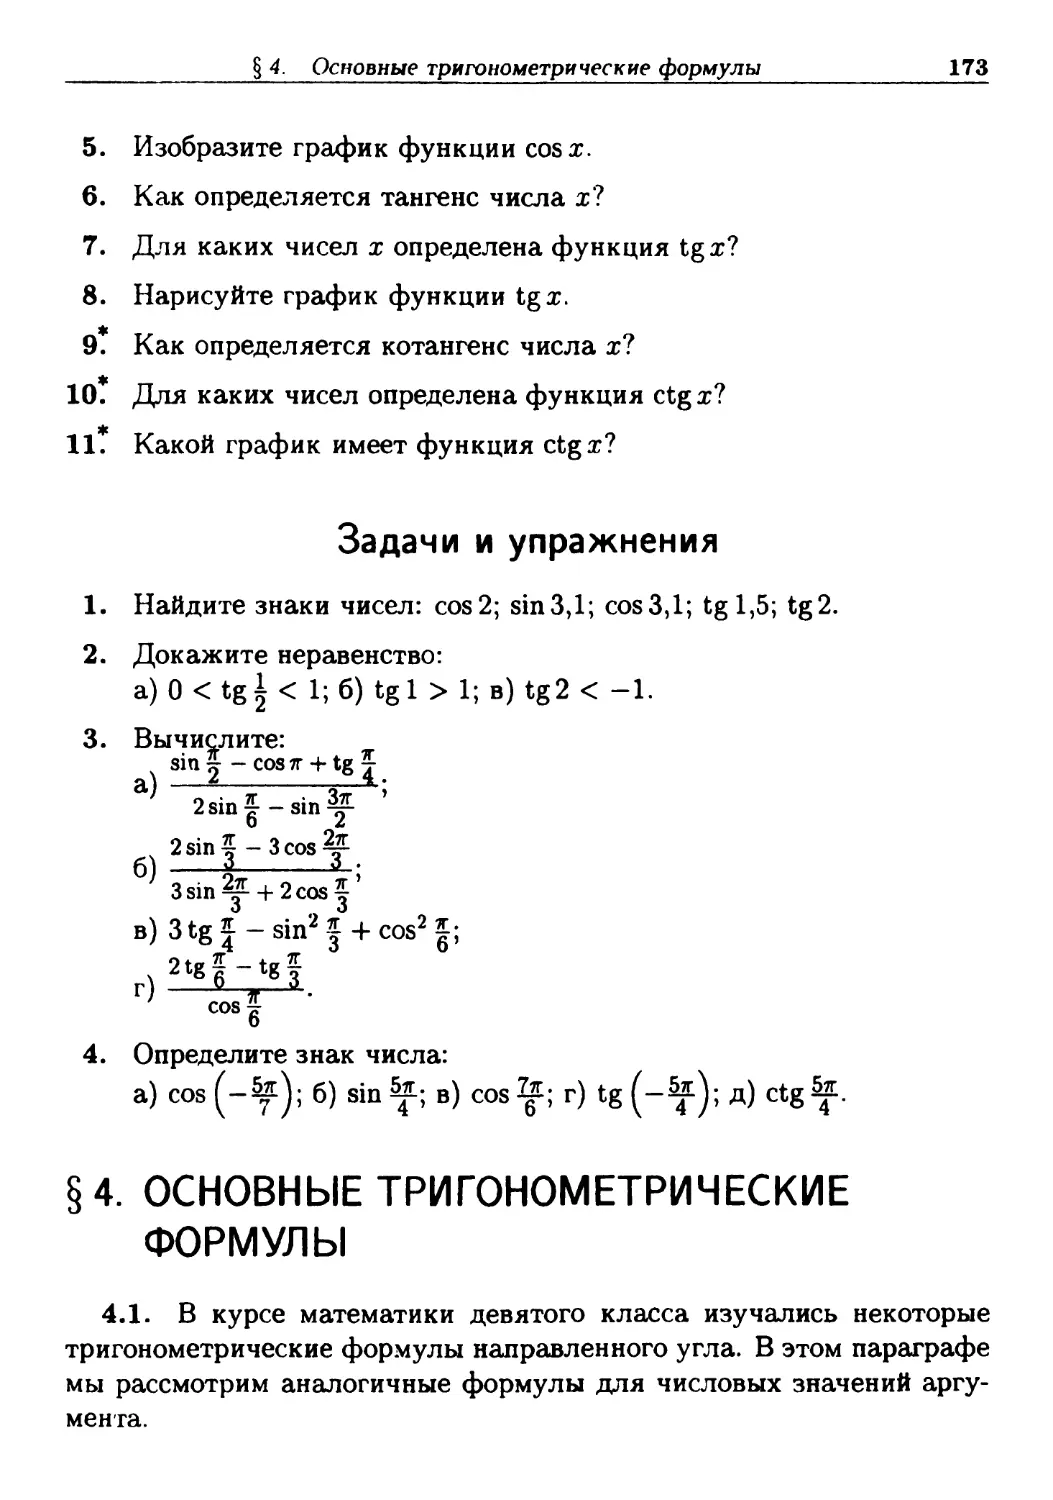 §4. Основные тригонометрические формулы